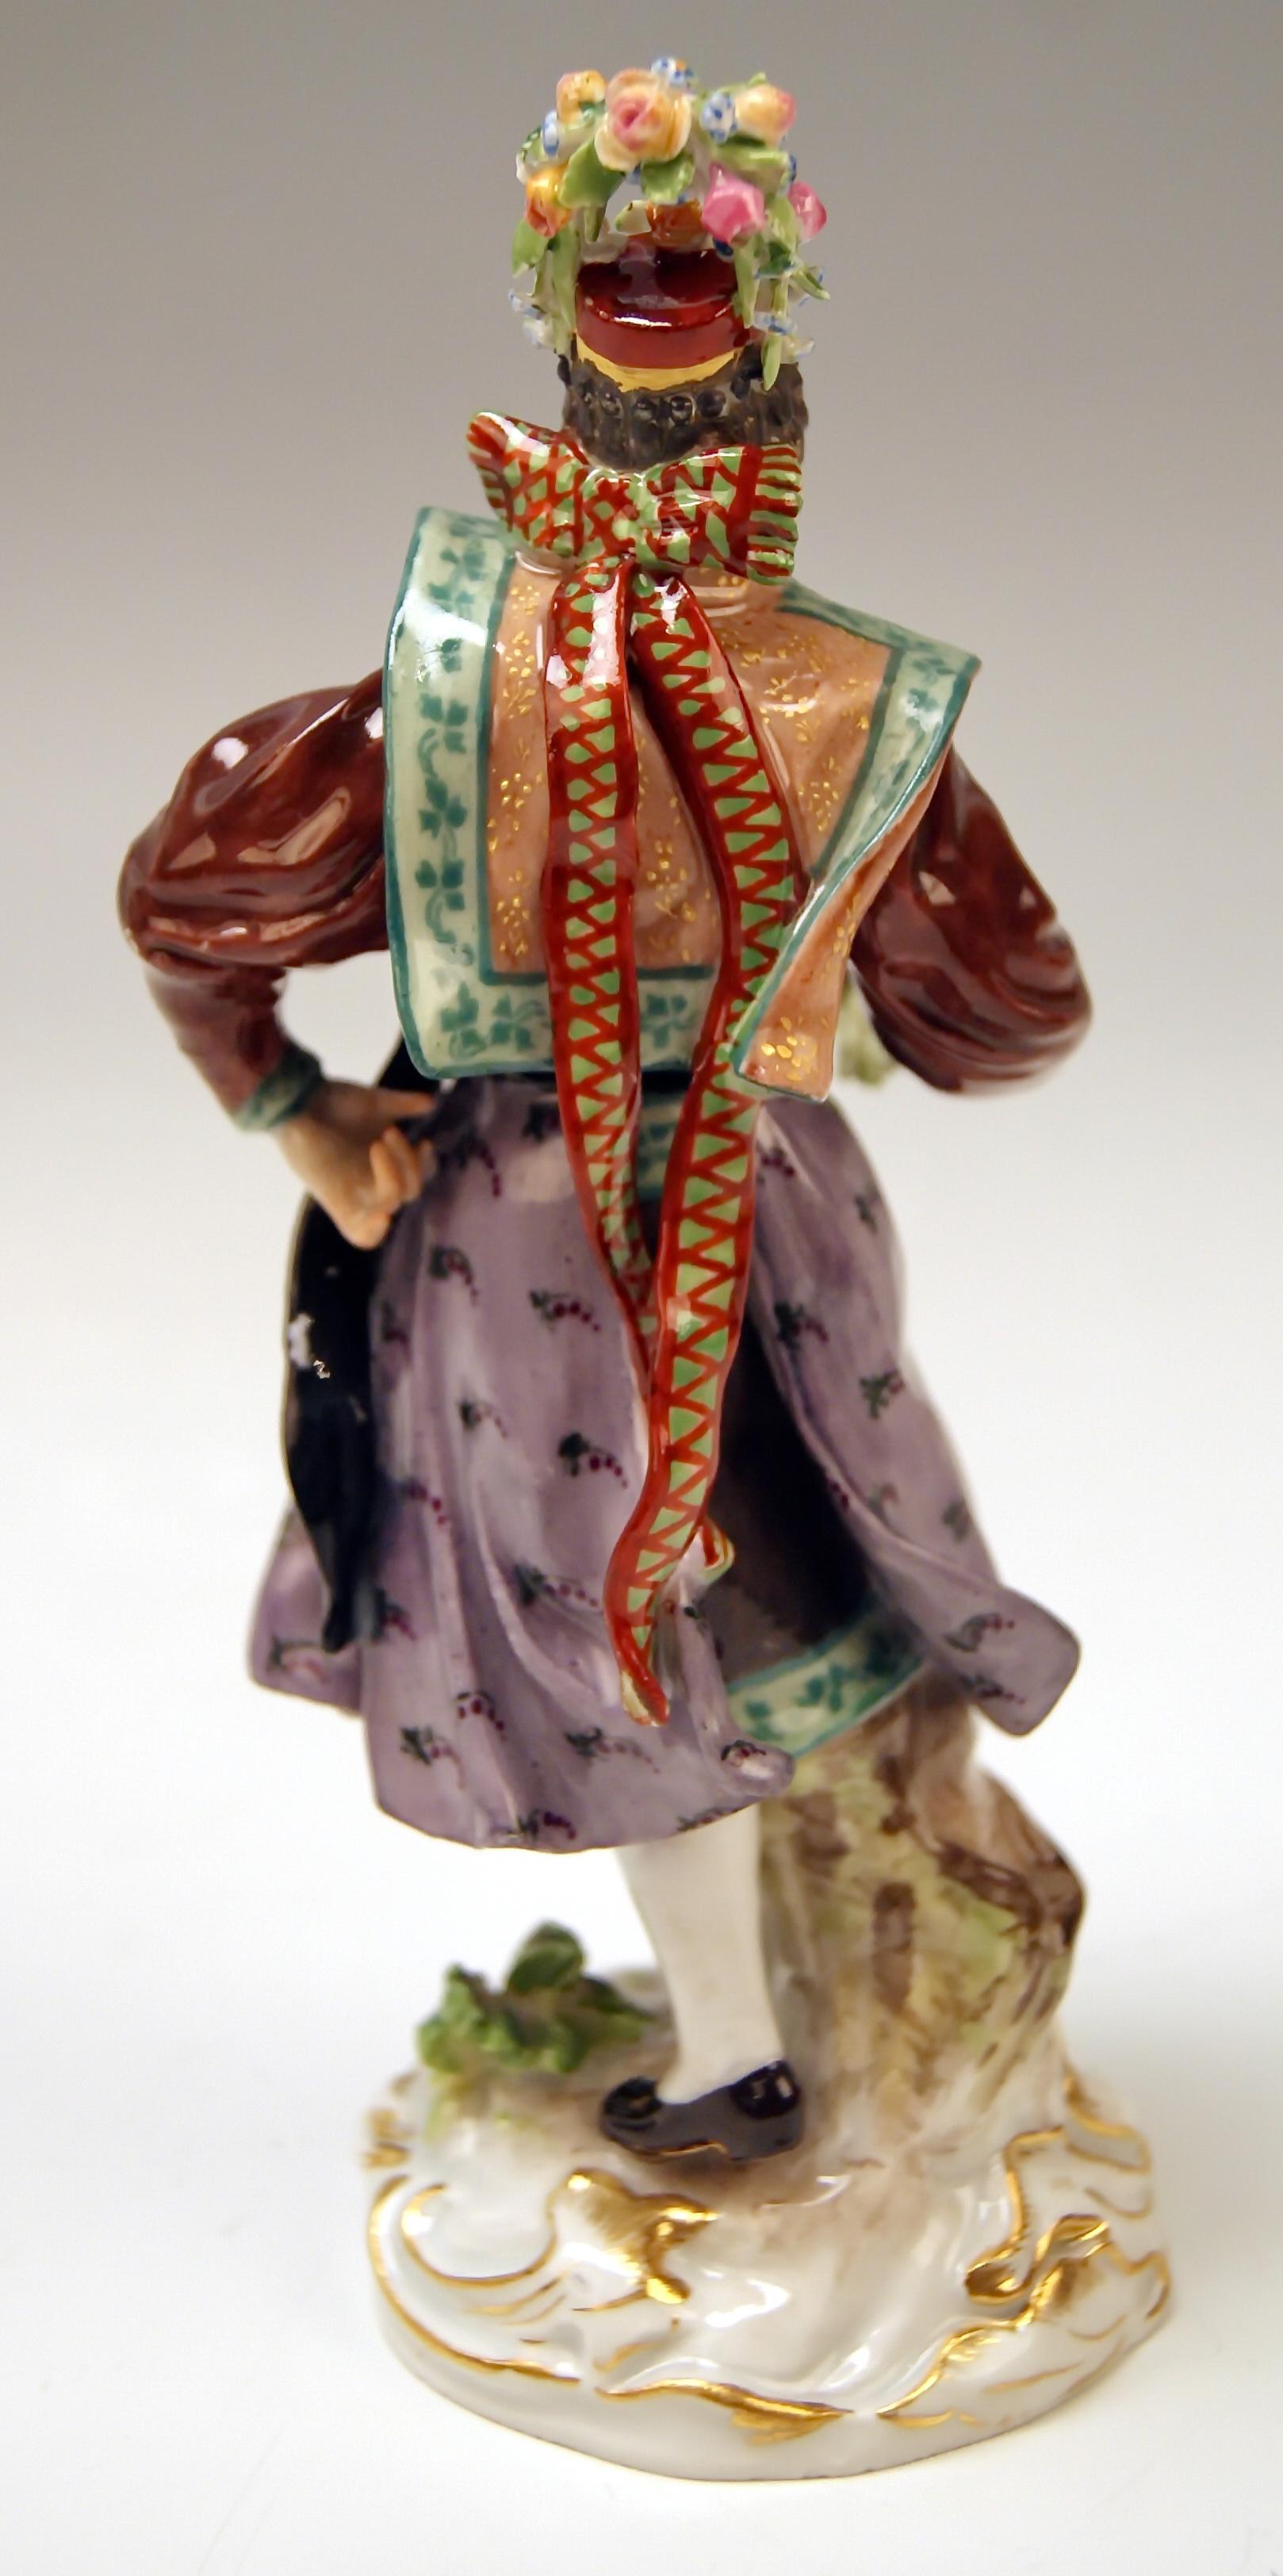 Painted Meissen Figurine Peasant Woman Hormetjungfer Model Q 190 B by Hugo Spieler, 1900